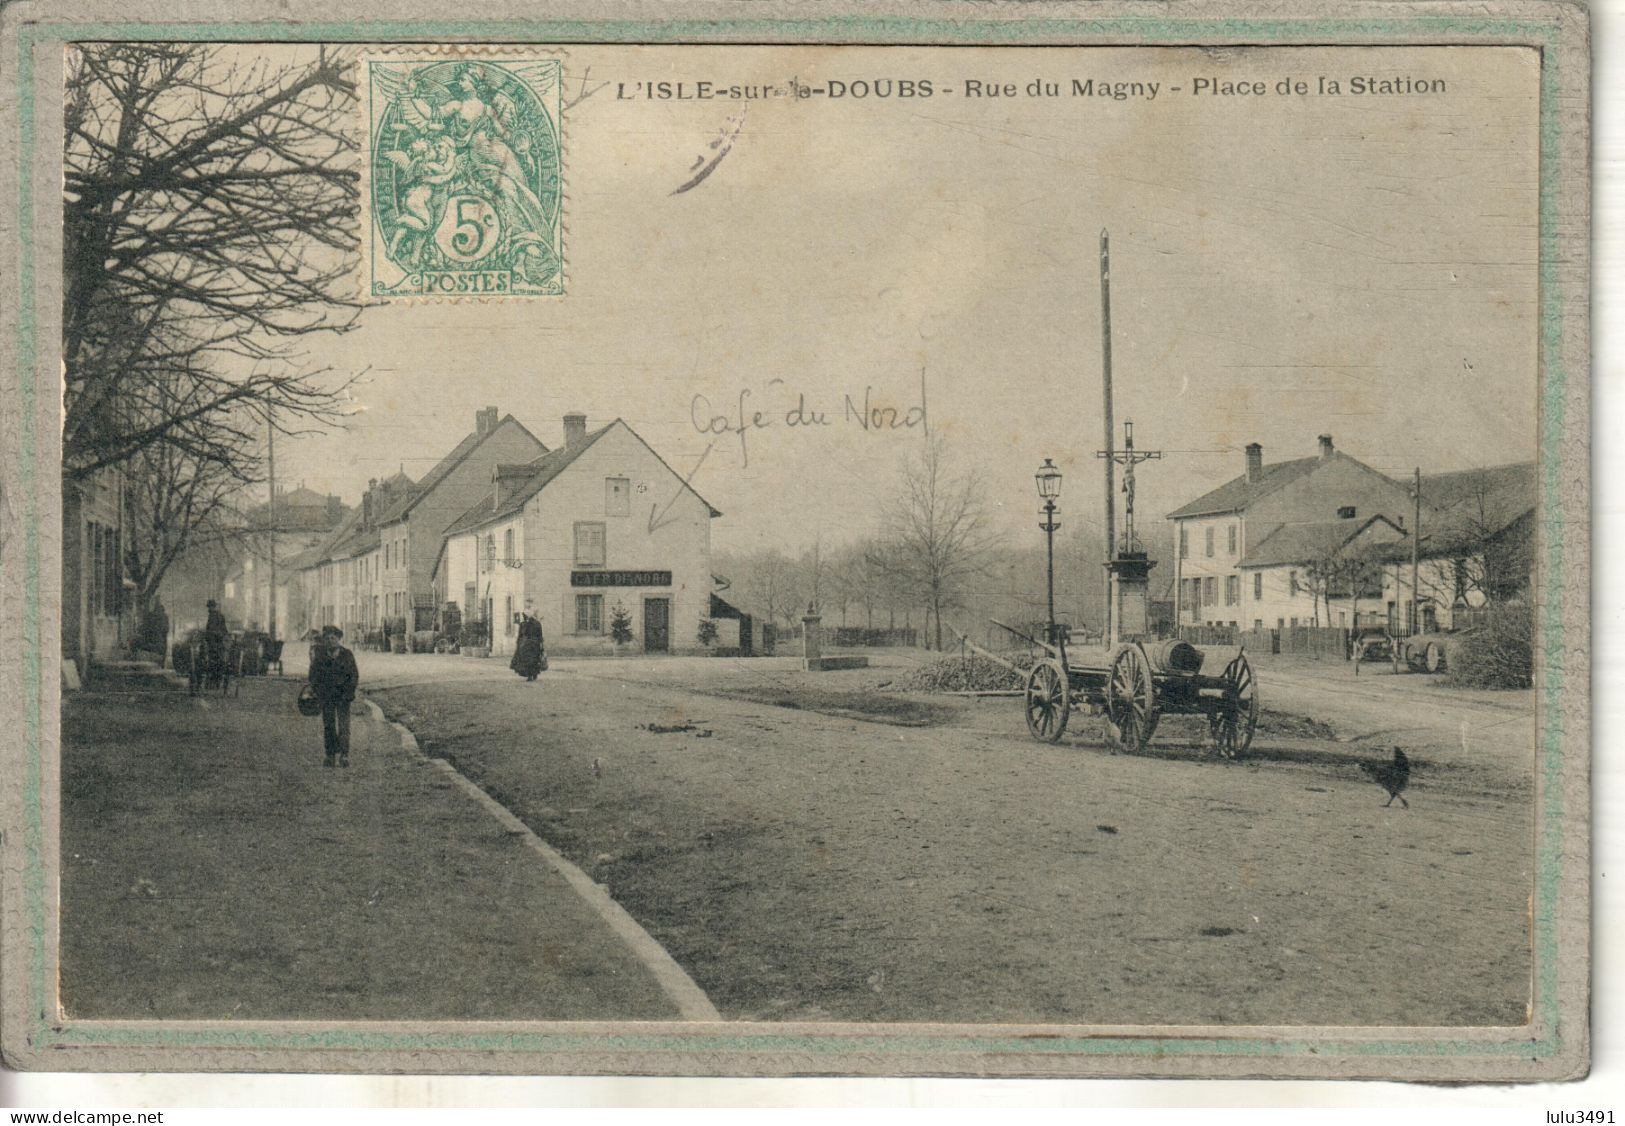 CPA (25) ISLE-sur-le-DOUBS - Aspect Du Café Du Nord Place De La Station Et De La Rue Du Magny En 1905 - Isle Sur Le Doubs